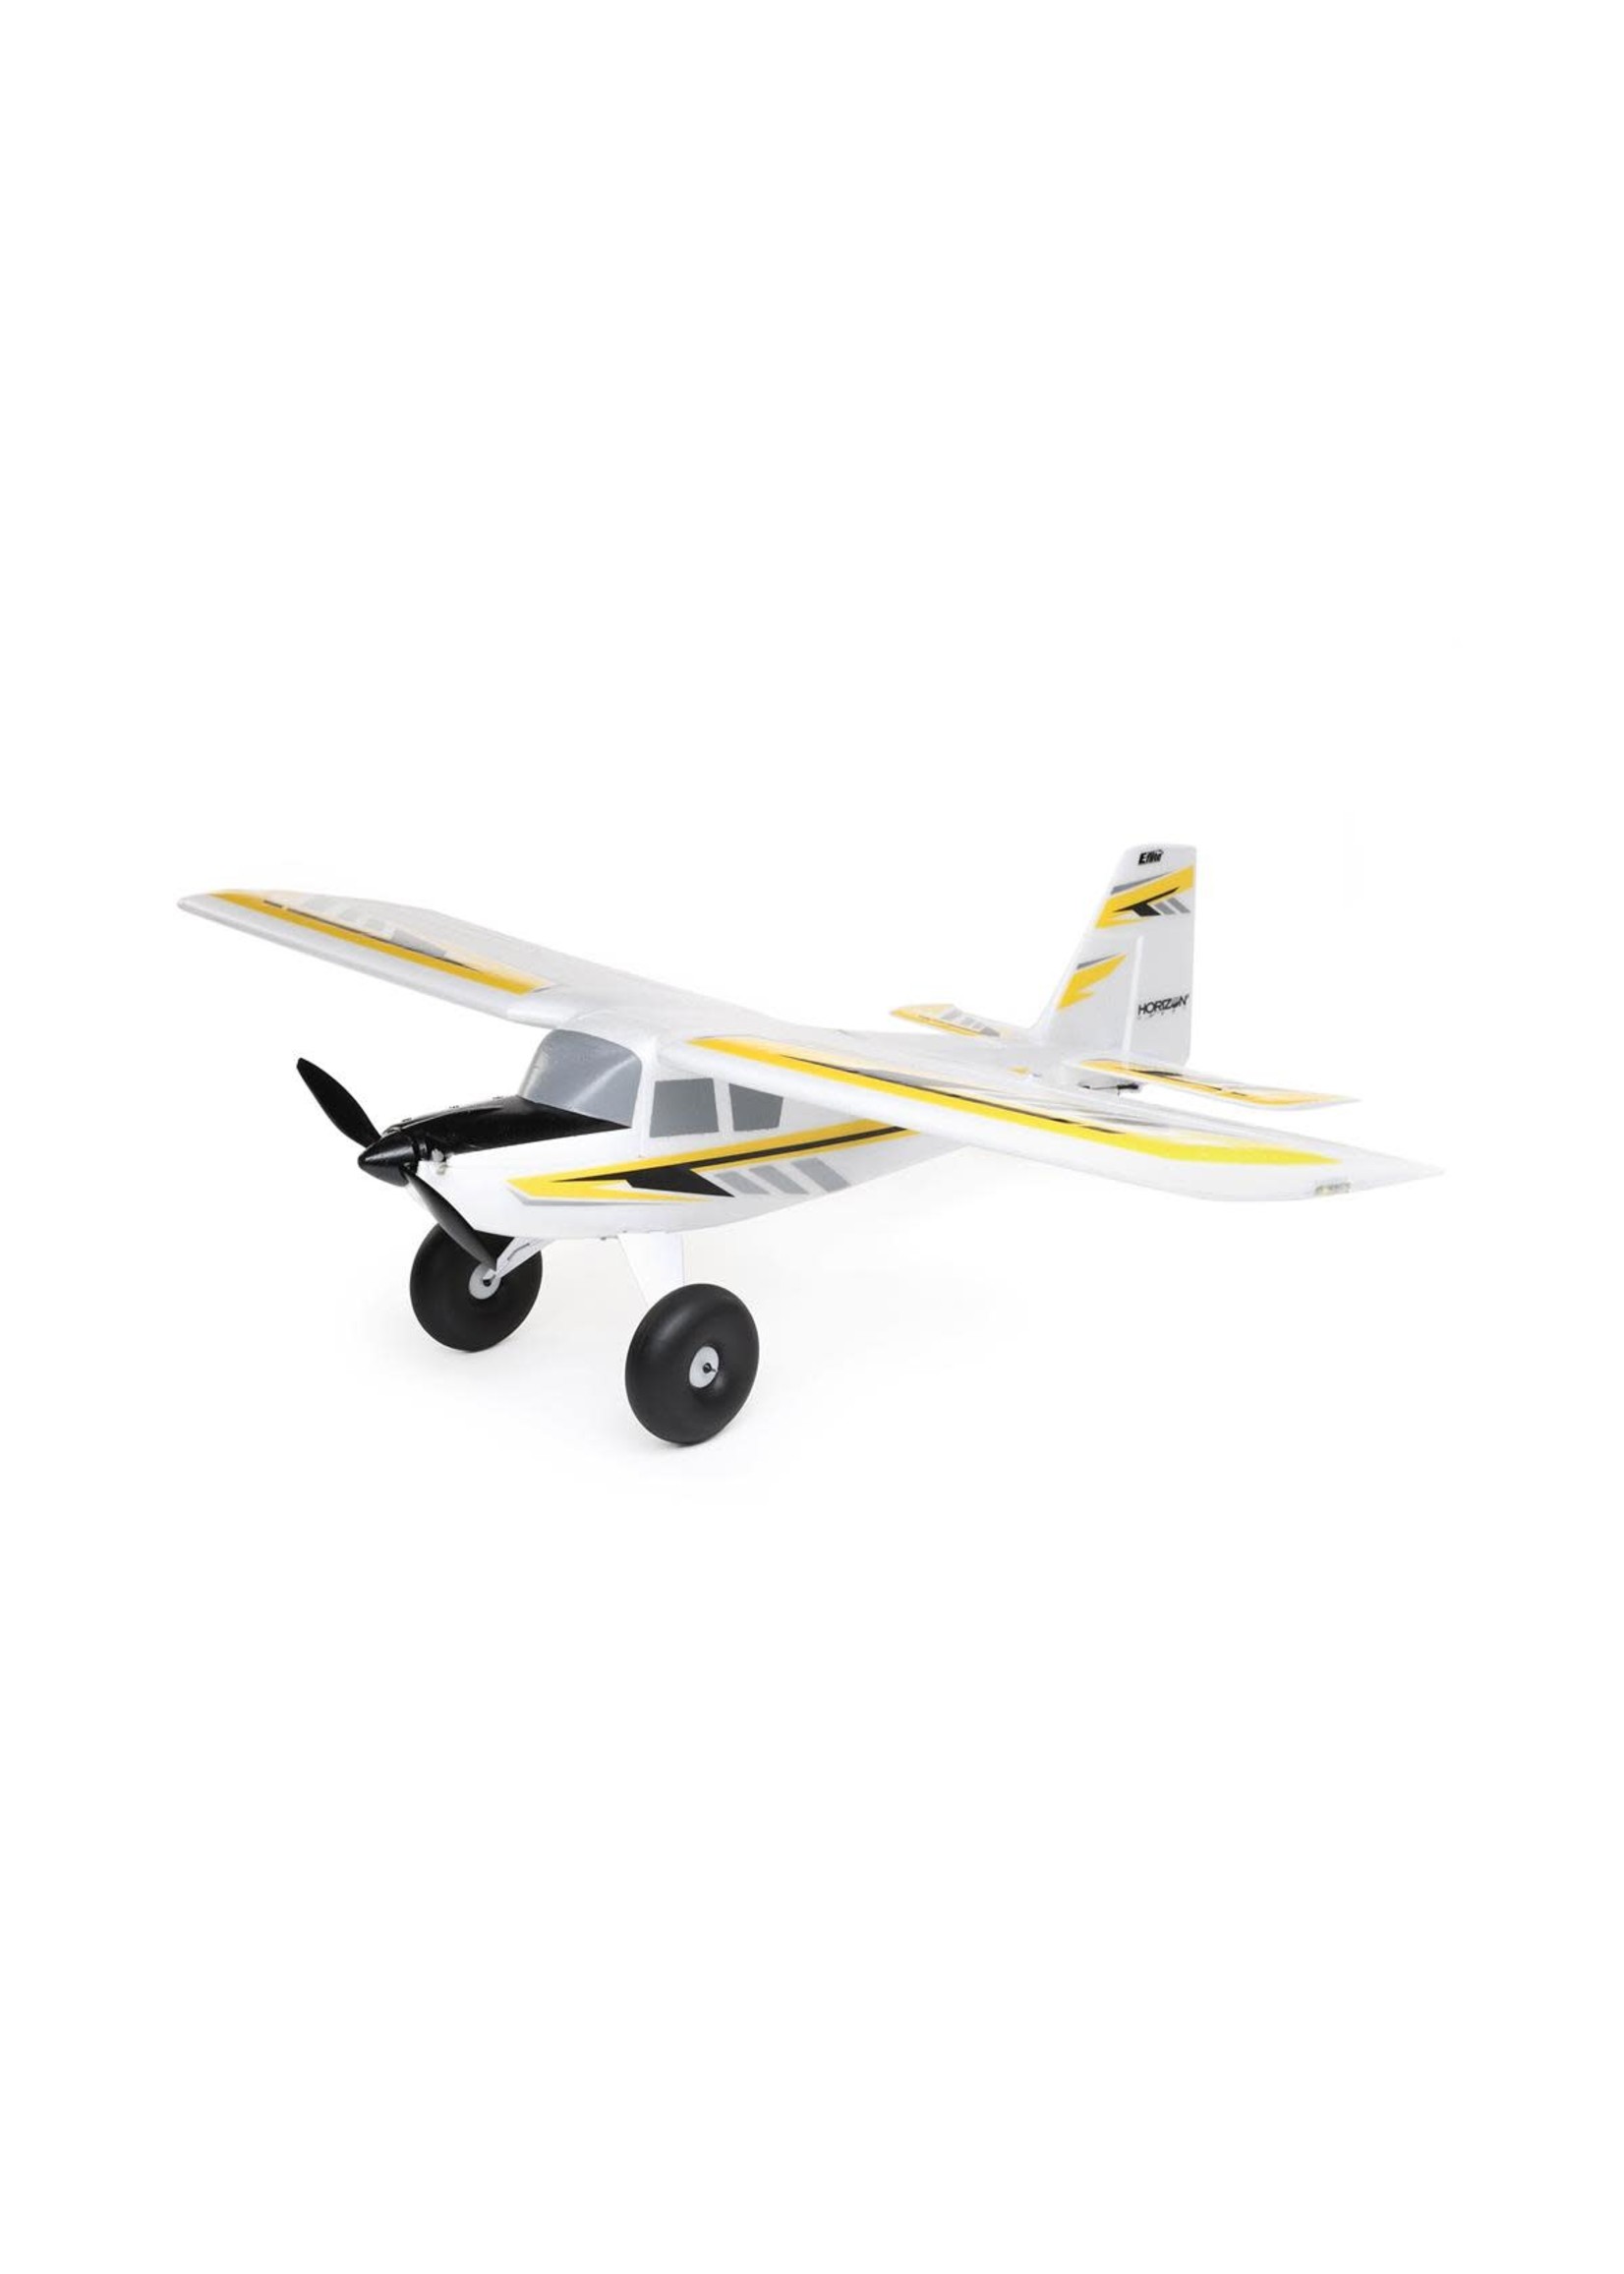 E-Flite EFLU7950 E-flite UMX Timber X BNF Basic Electric Airplane (570mm) w/AS3X & SAFE Select